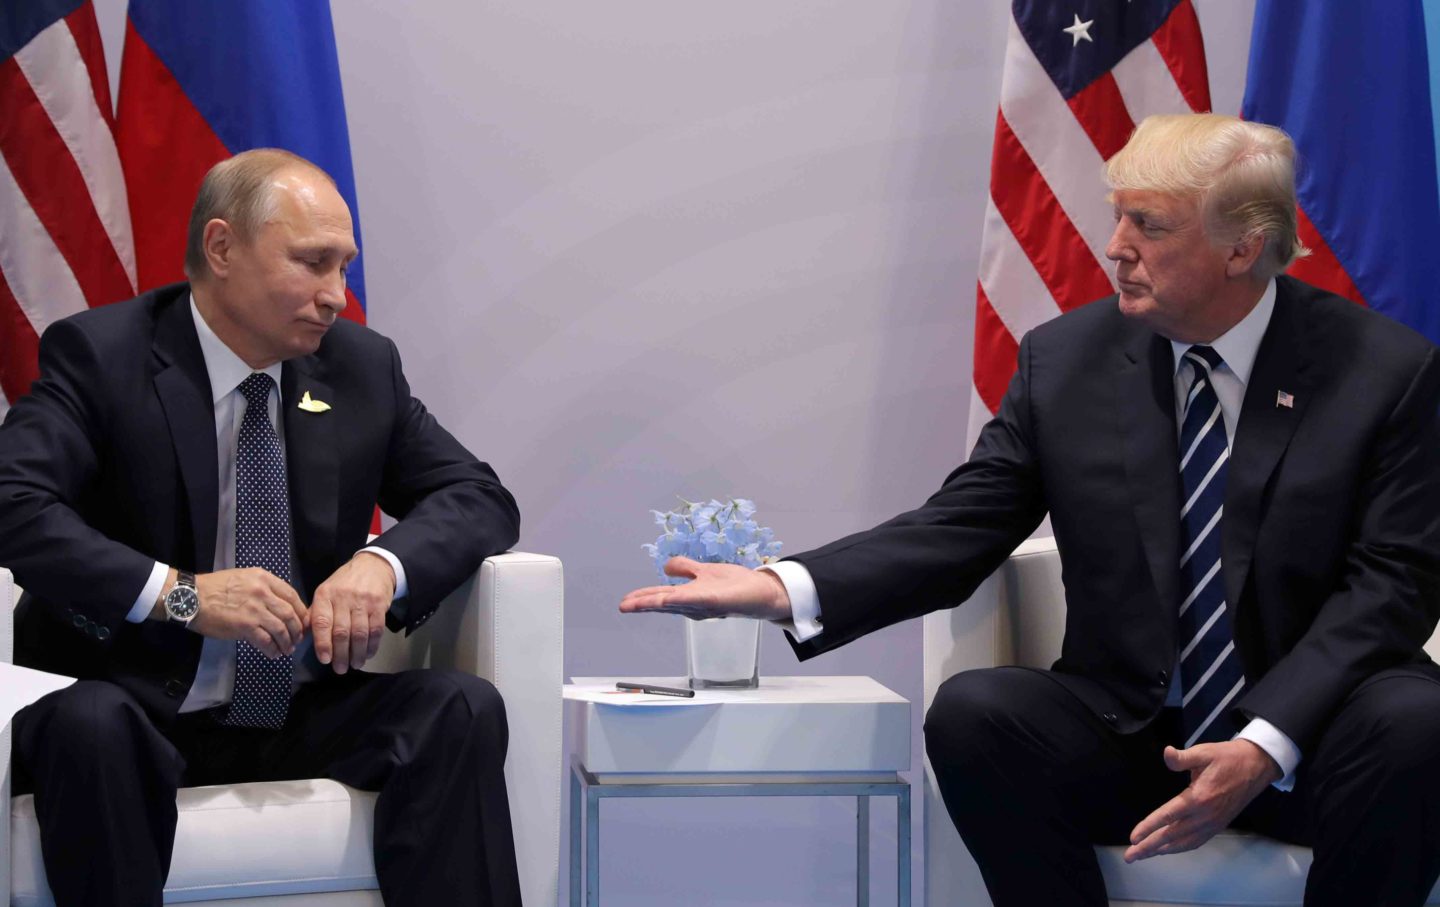 Trump and Putin at G20